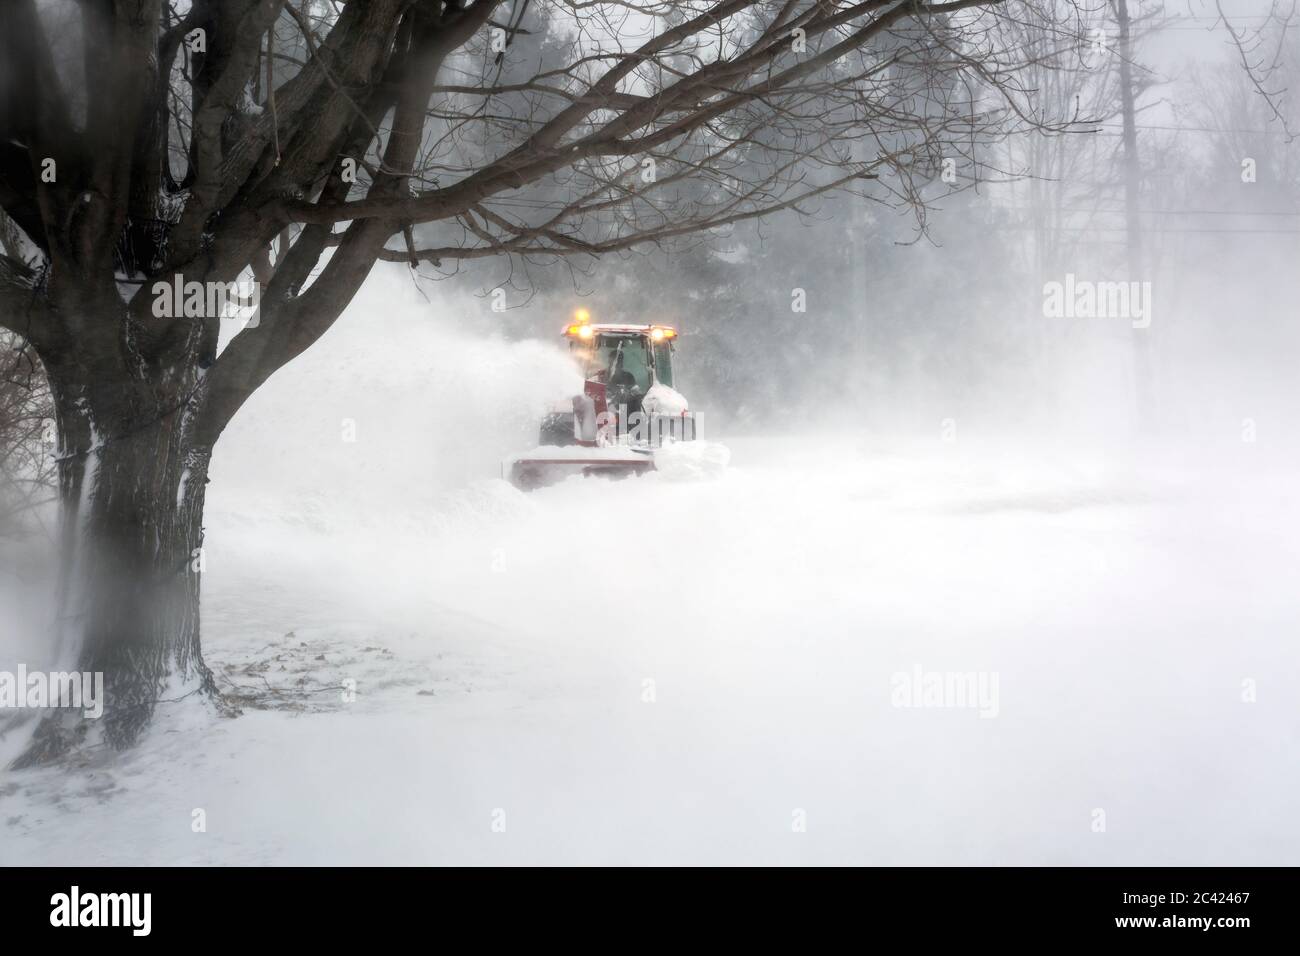 souffleur de neige soufflant de la neige de l'allée pendant le blizzard Banque D'Images